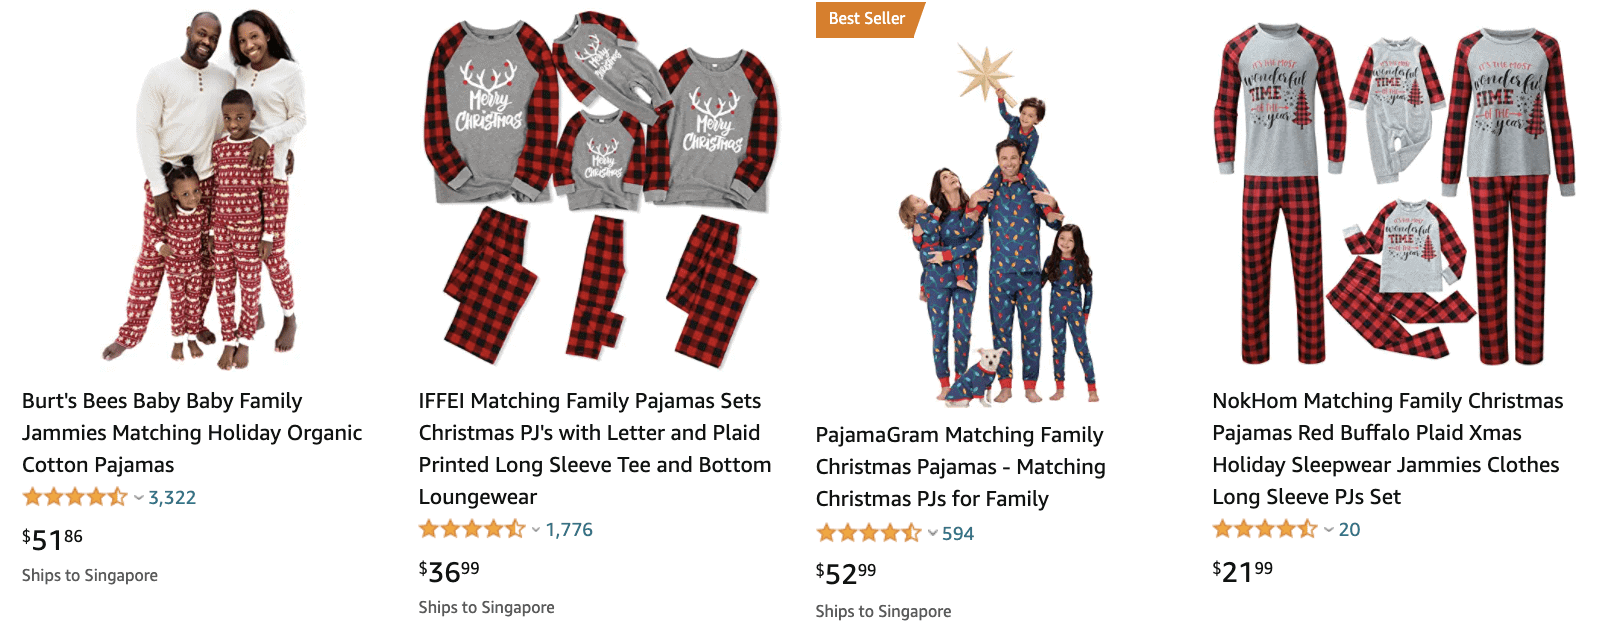 Family pajamas on Amazon.com